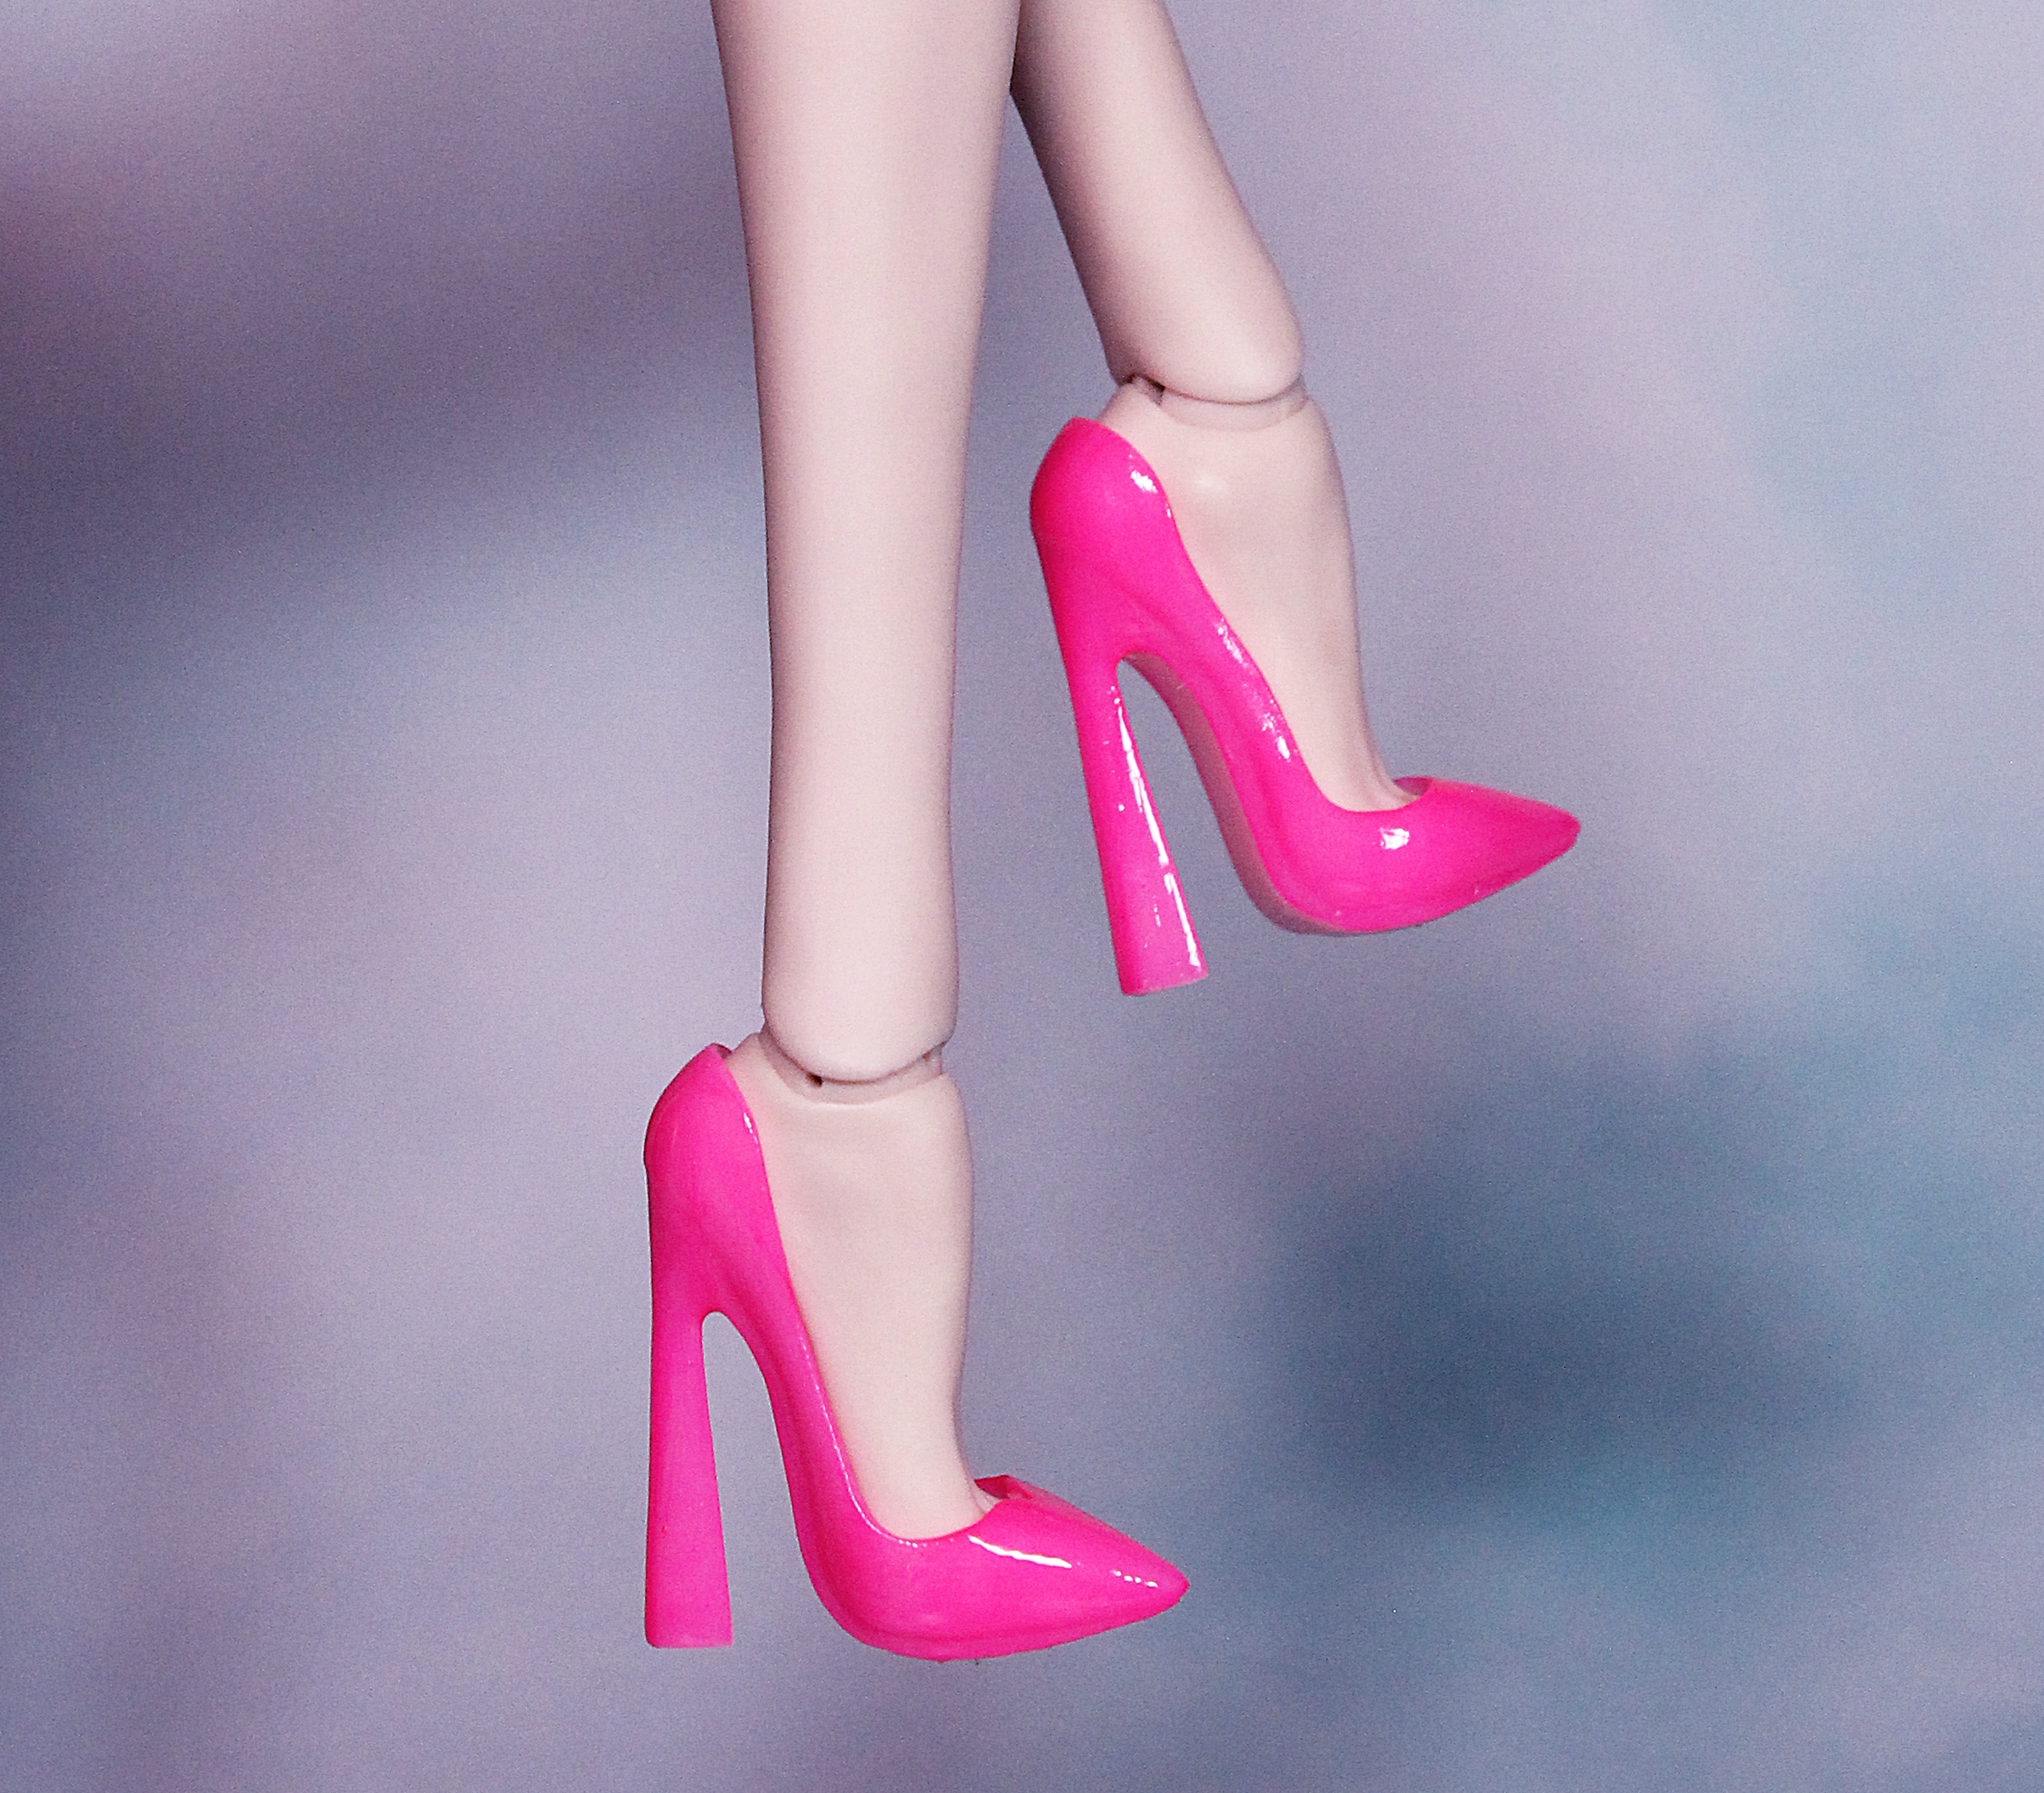 Neon Pink Heels stock photo. Image of heels, sharp, shoe - 31764330